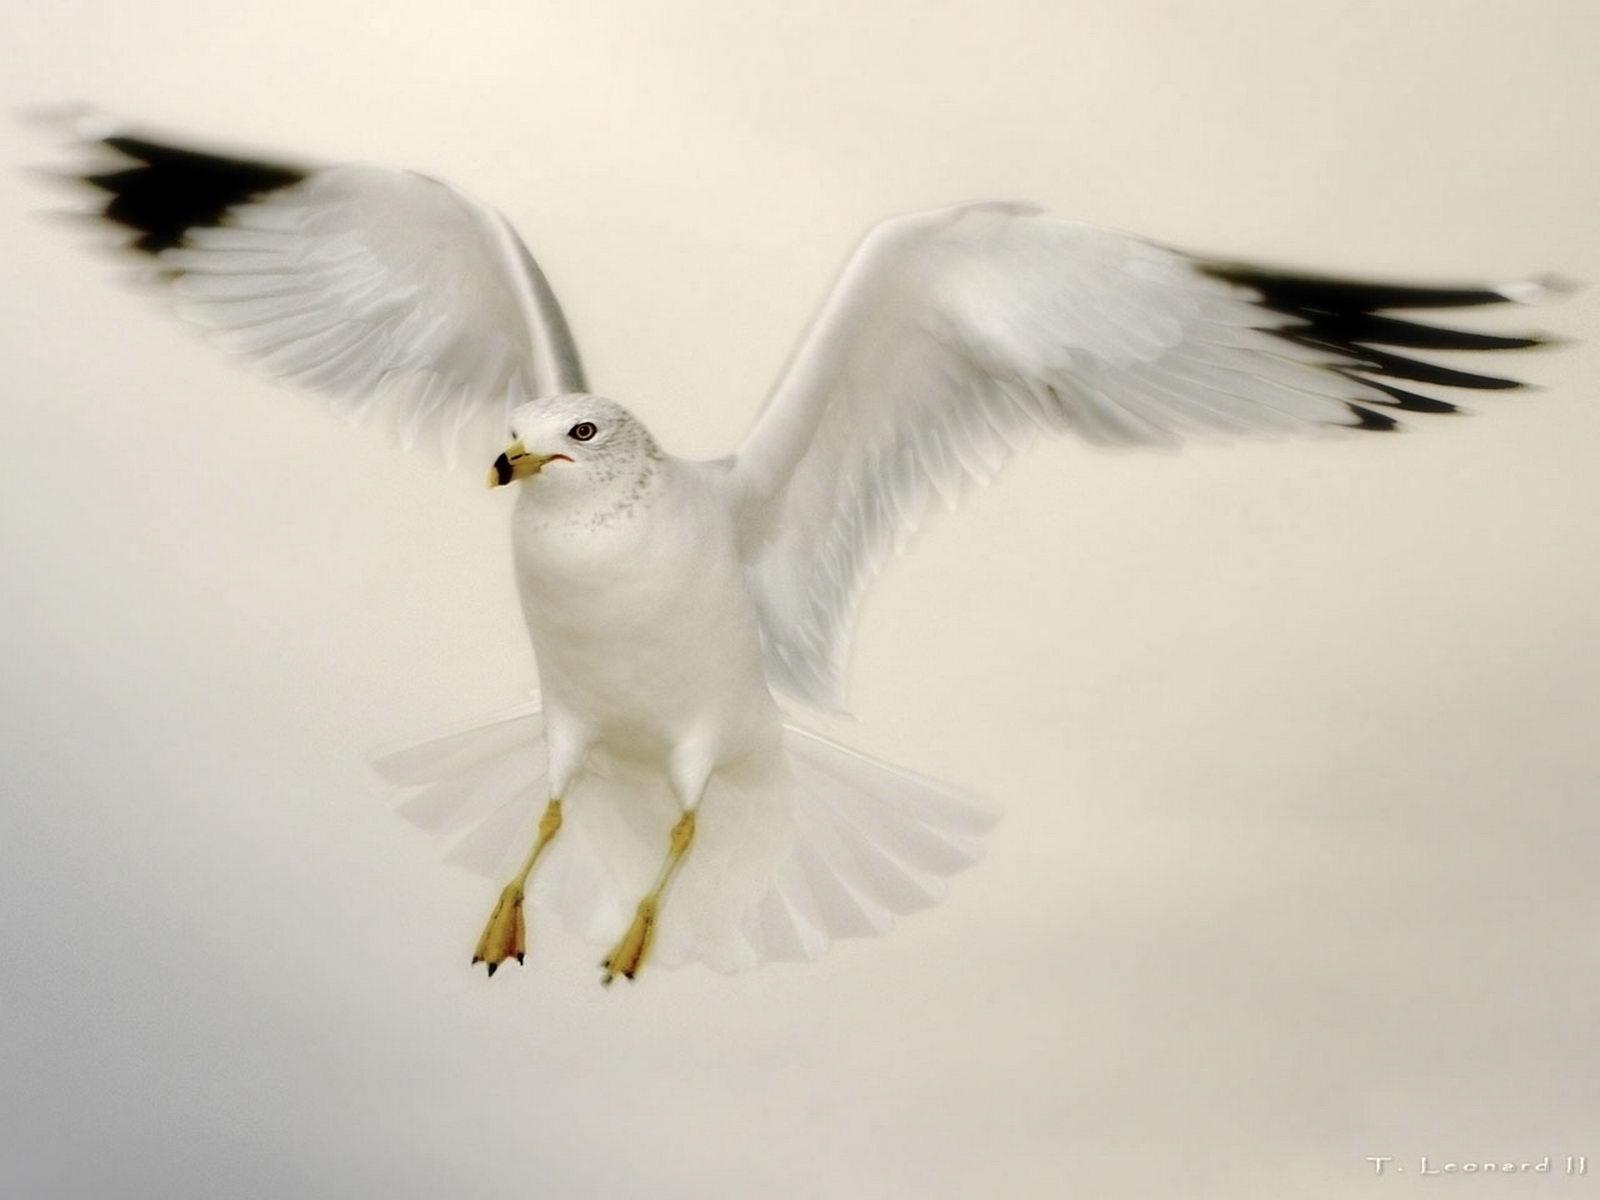 Flying Dove5610817483 - Flying Dove - Labrador, Flying, Dove